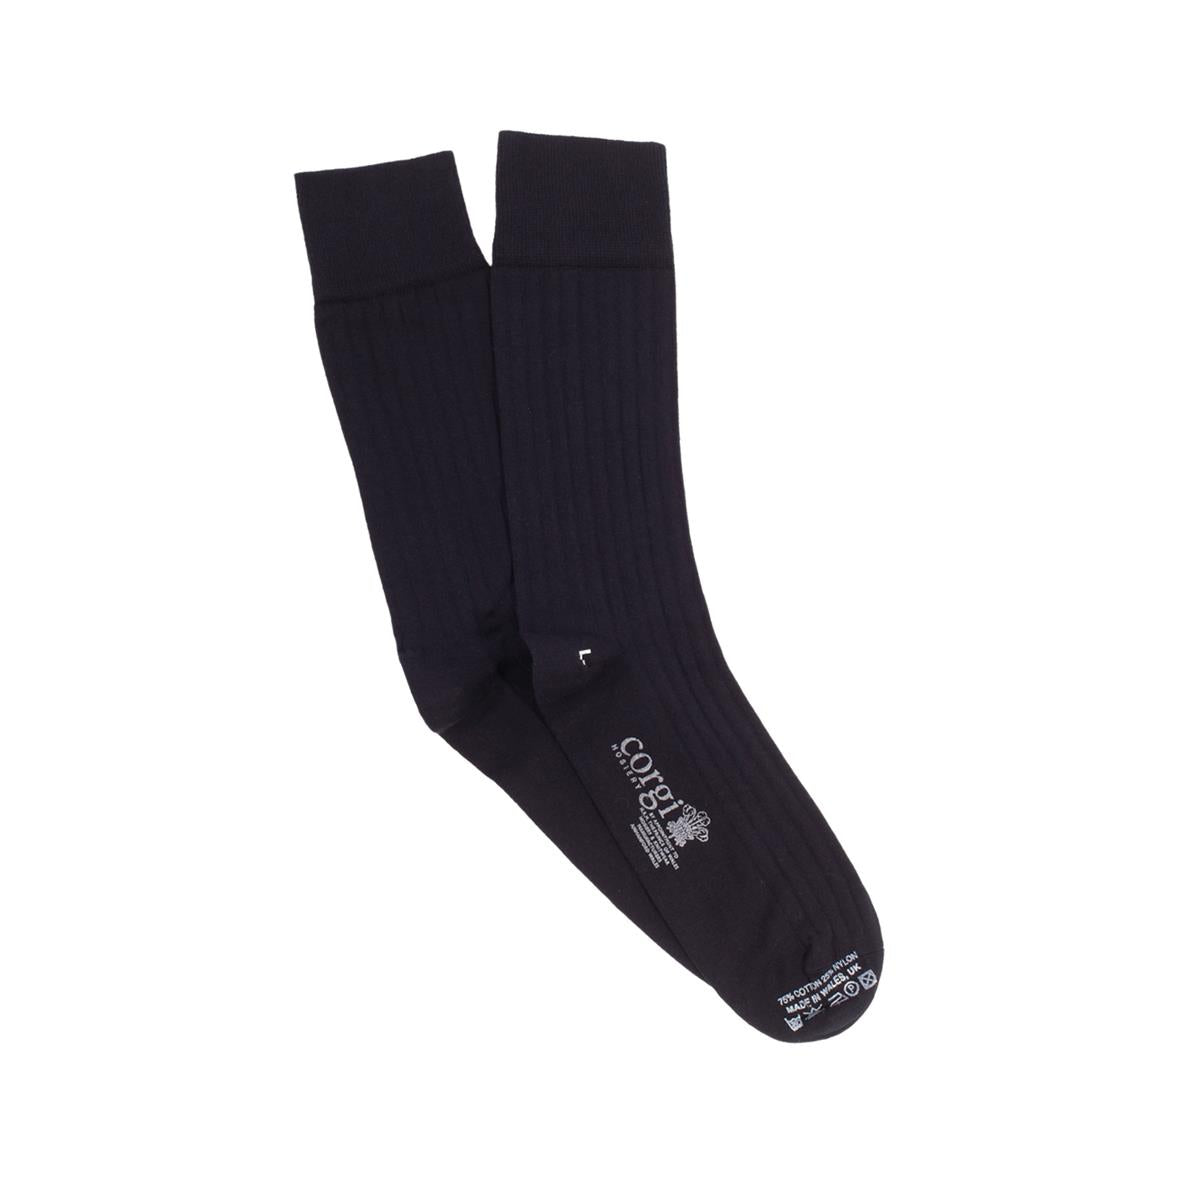 Brecon Cotton Rib Socks - Men's